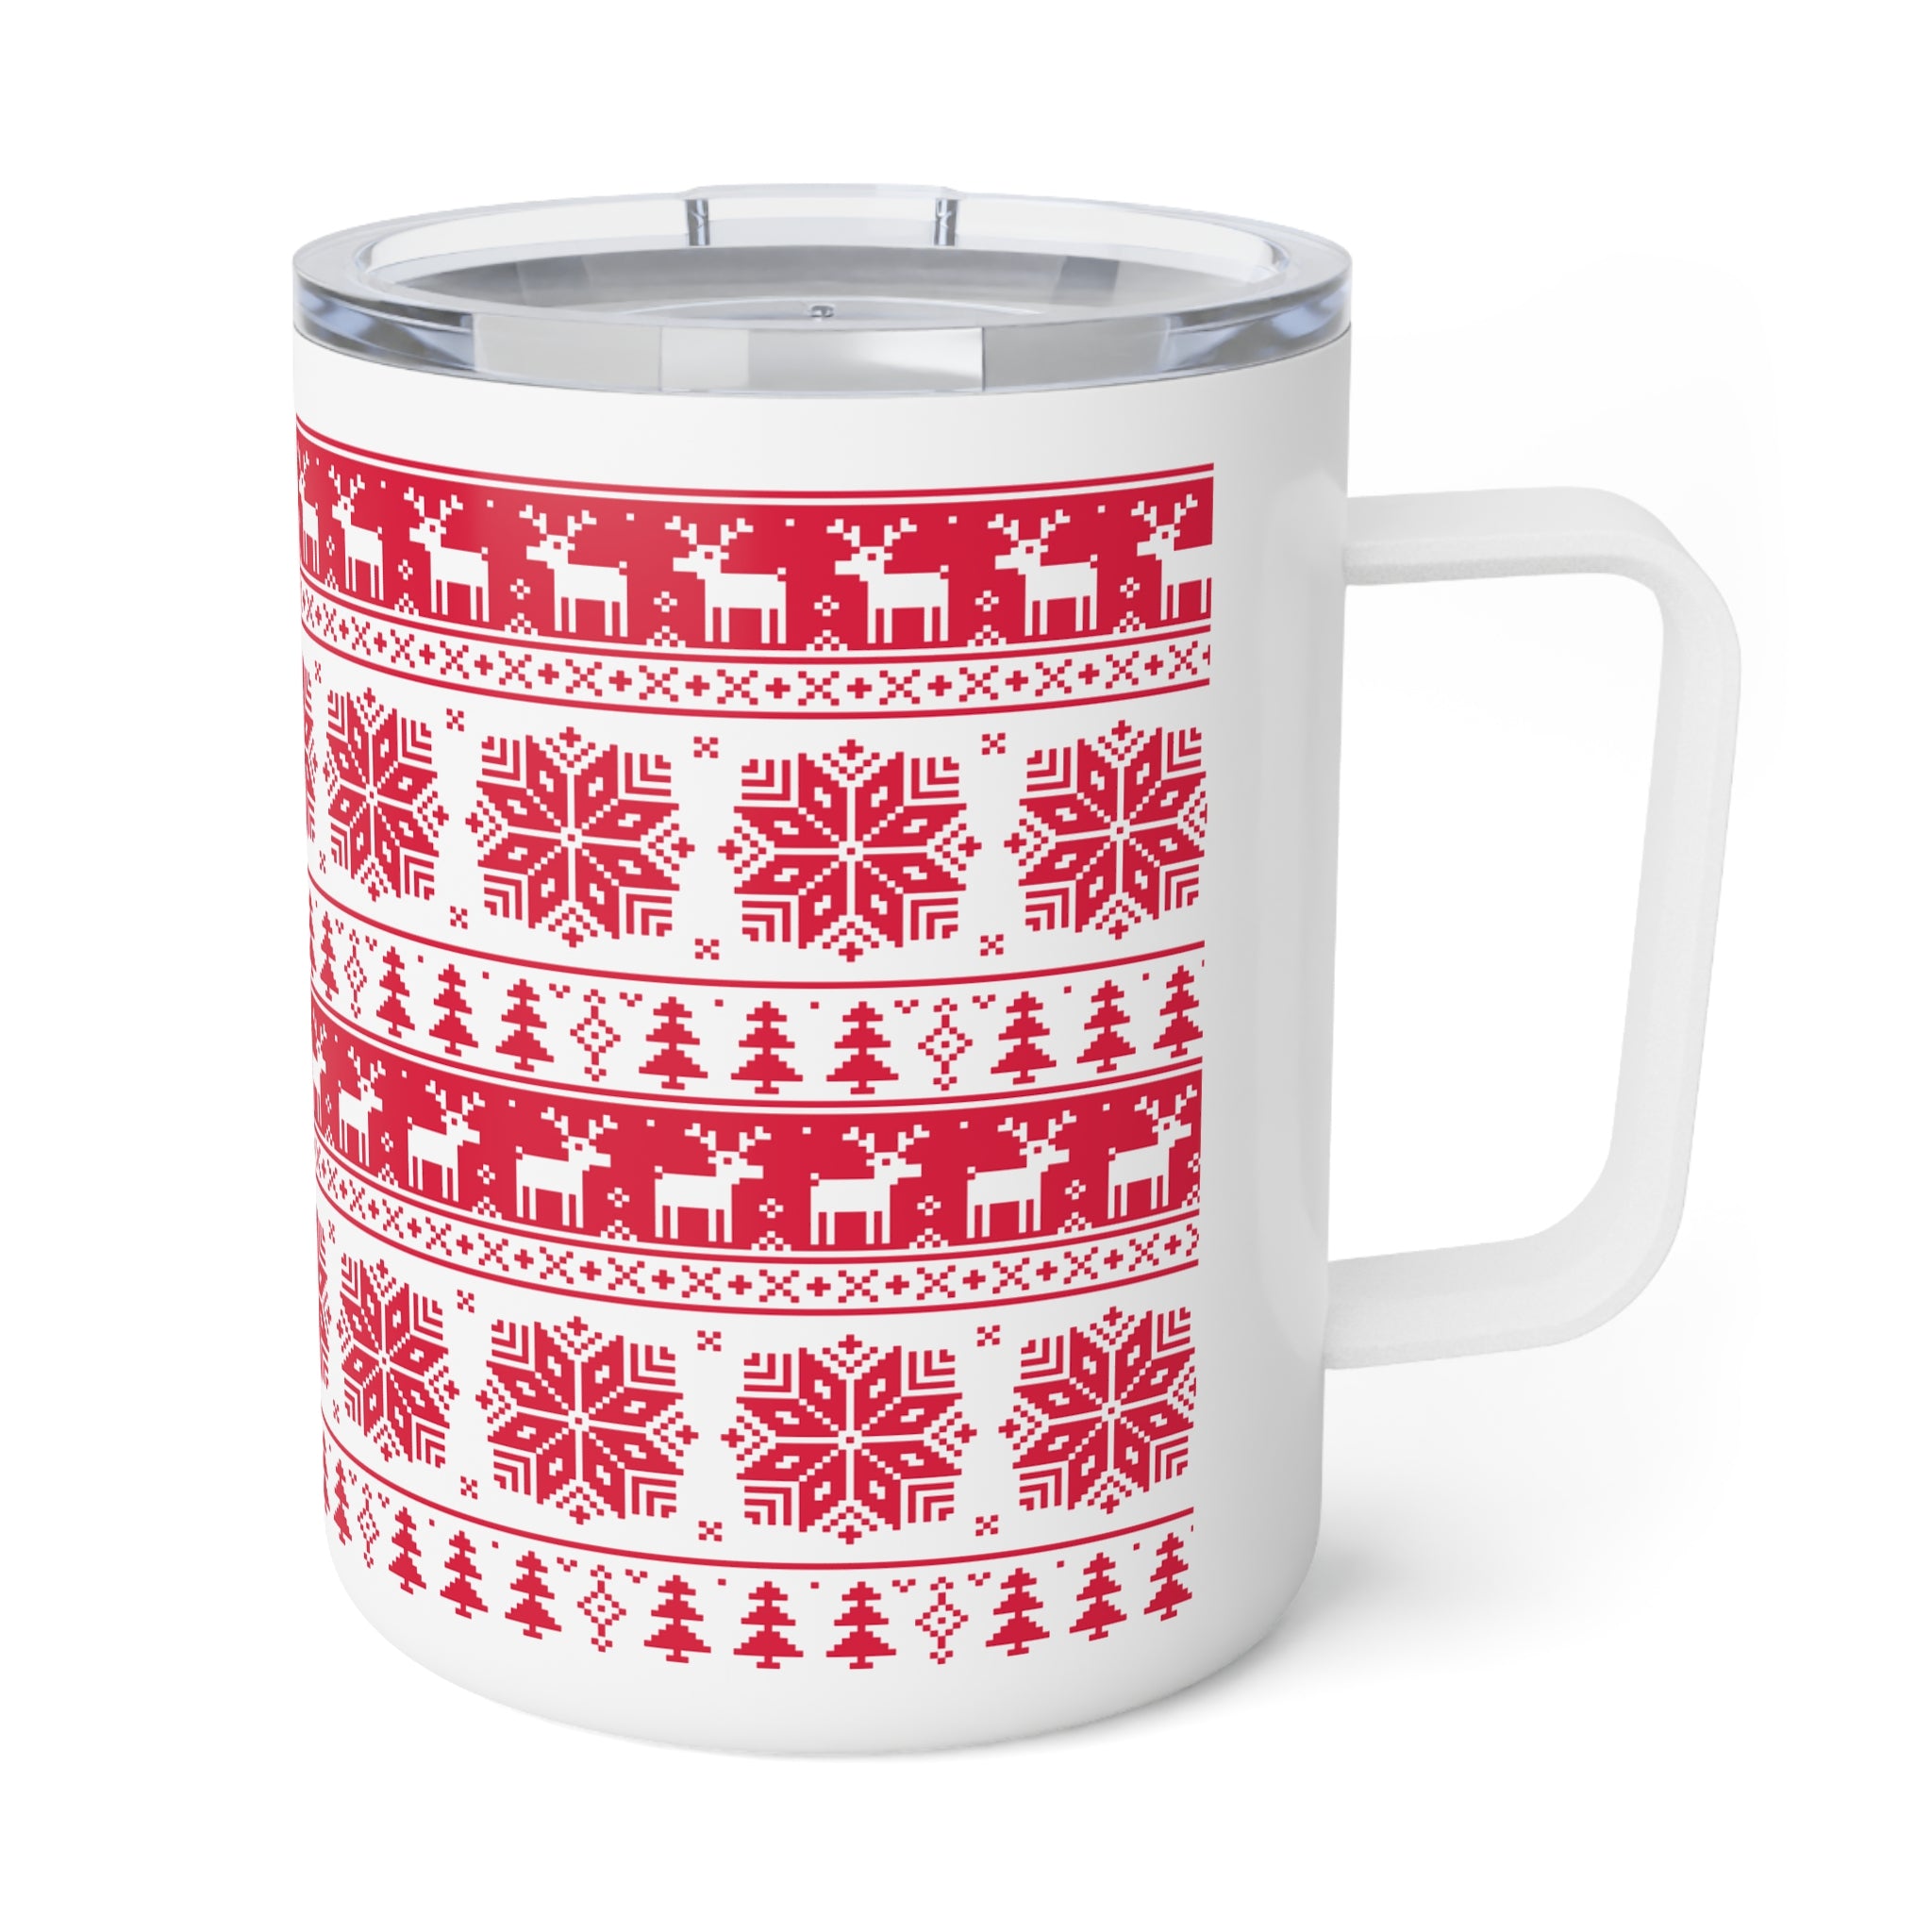 Insulated Christmas Coffee Mug, 10oz Red